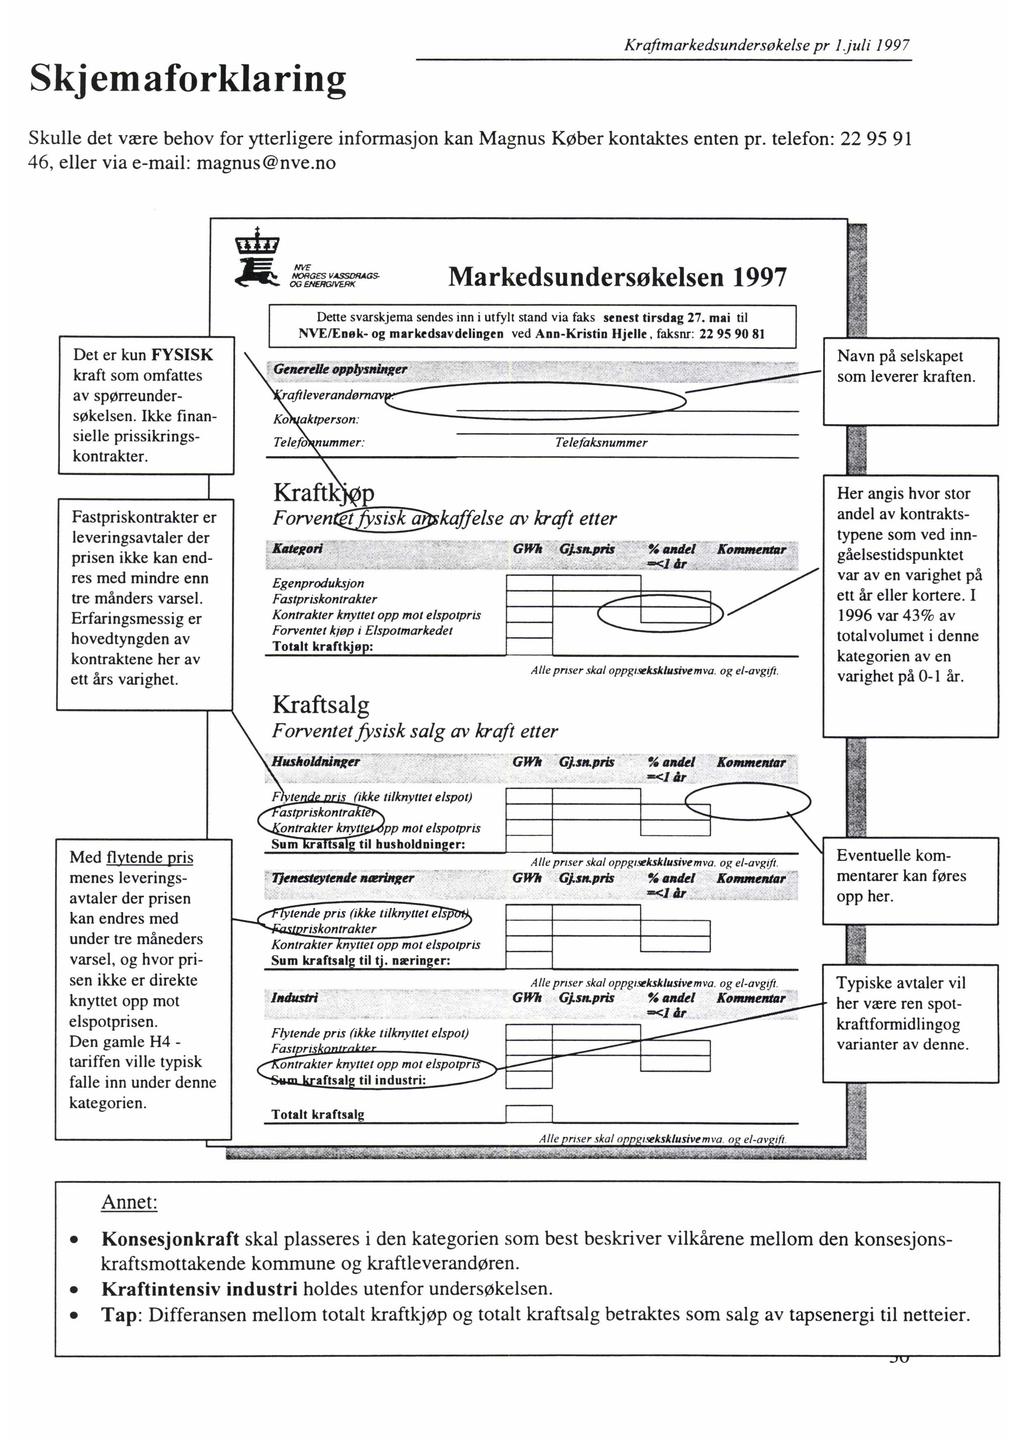 Skjemaforklaring Krafimarkedsundersokelse pr 1.juli 1997 Skulle det være behov for ytterligere informasjon kan Magnus Køber kontaktes enten pr. telefon: 22 95 91 46, eller via e-mail: magnus@nve.